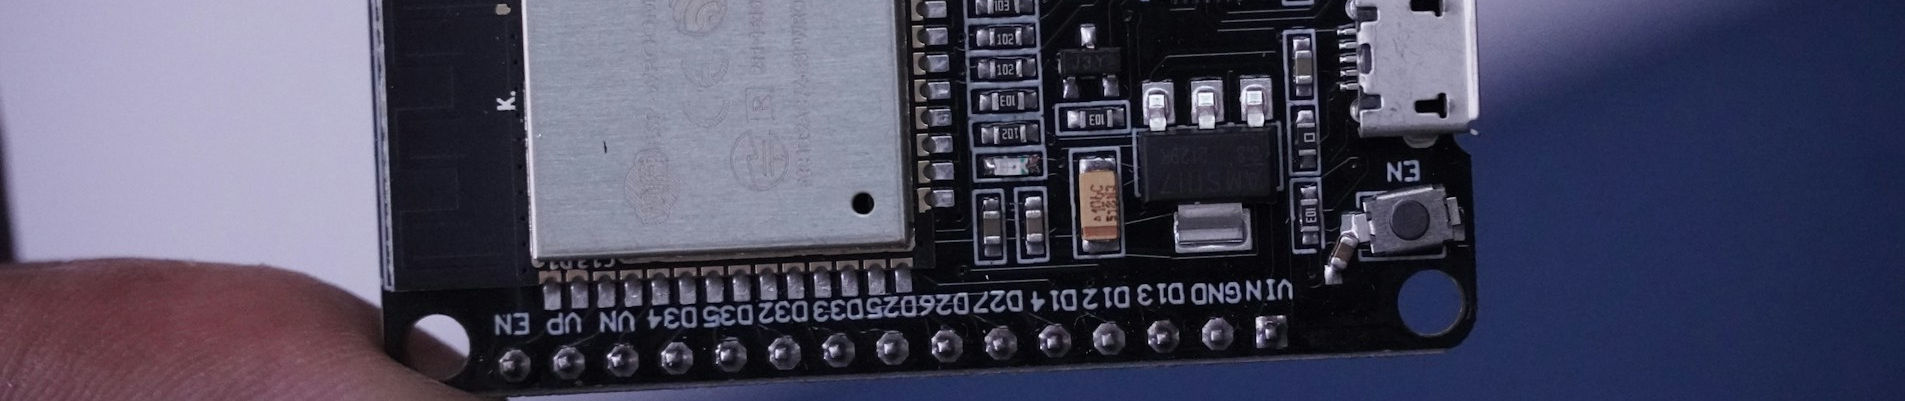 An image of an ESP32 Development board